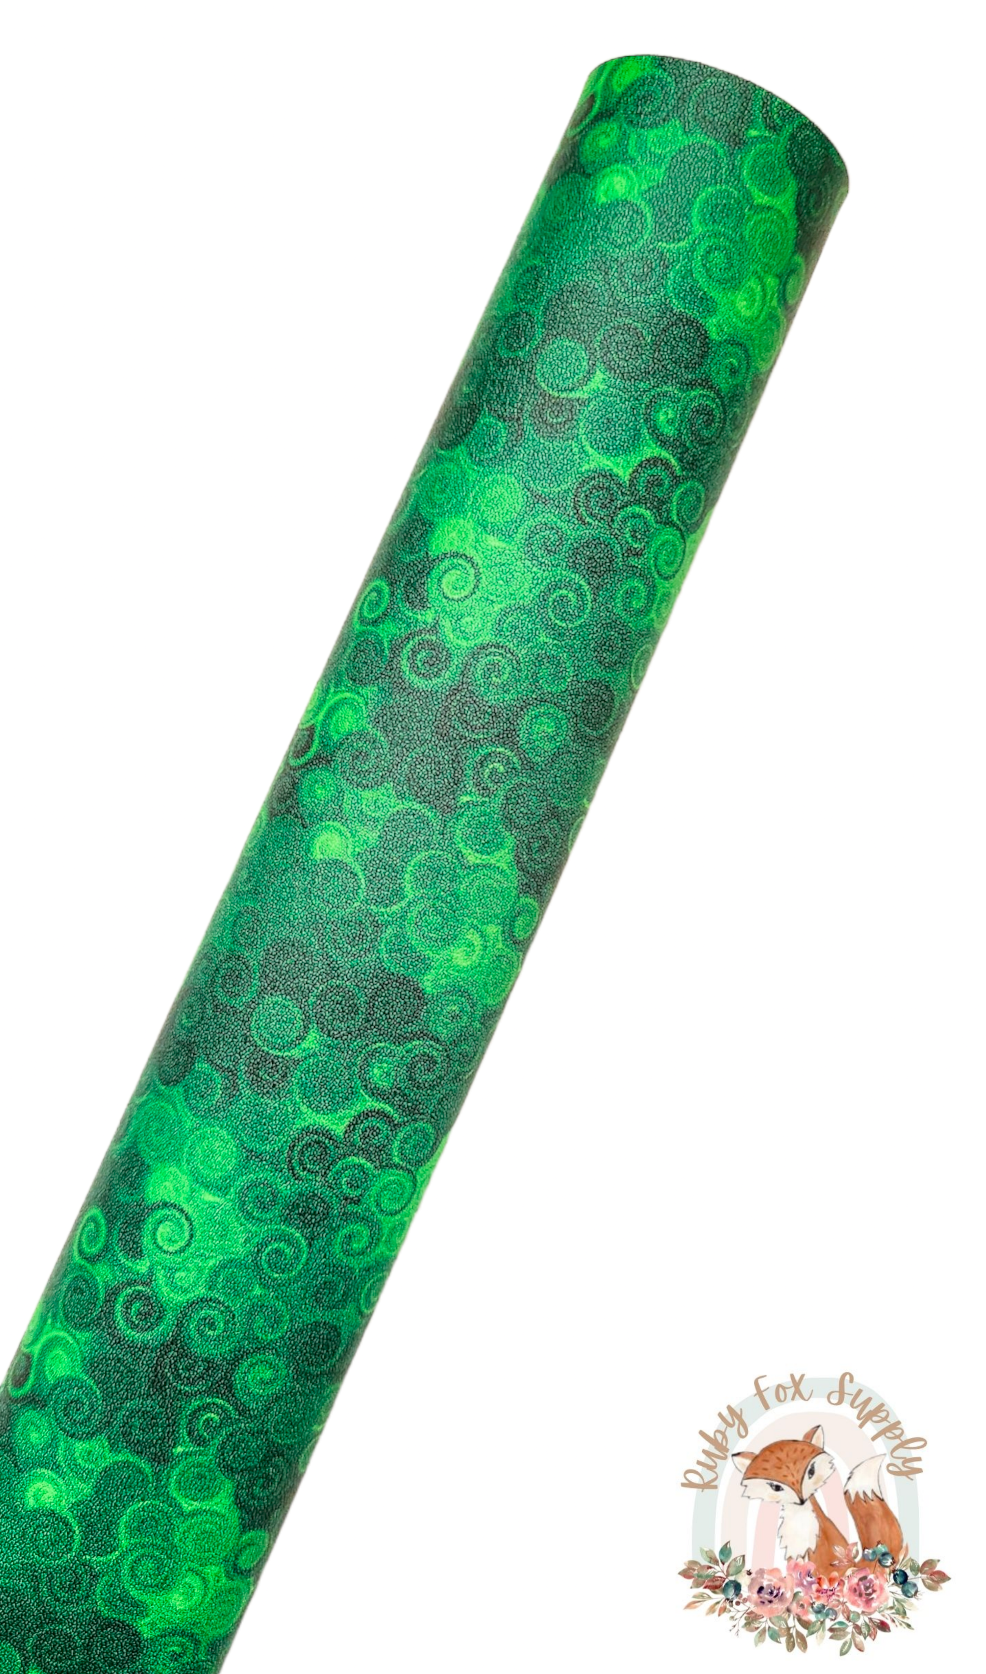 Green Swirls 9x12 faux leather sheet